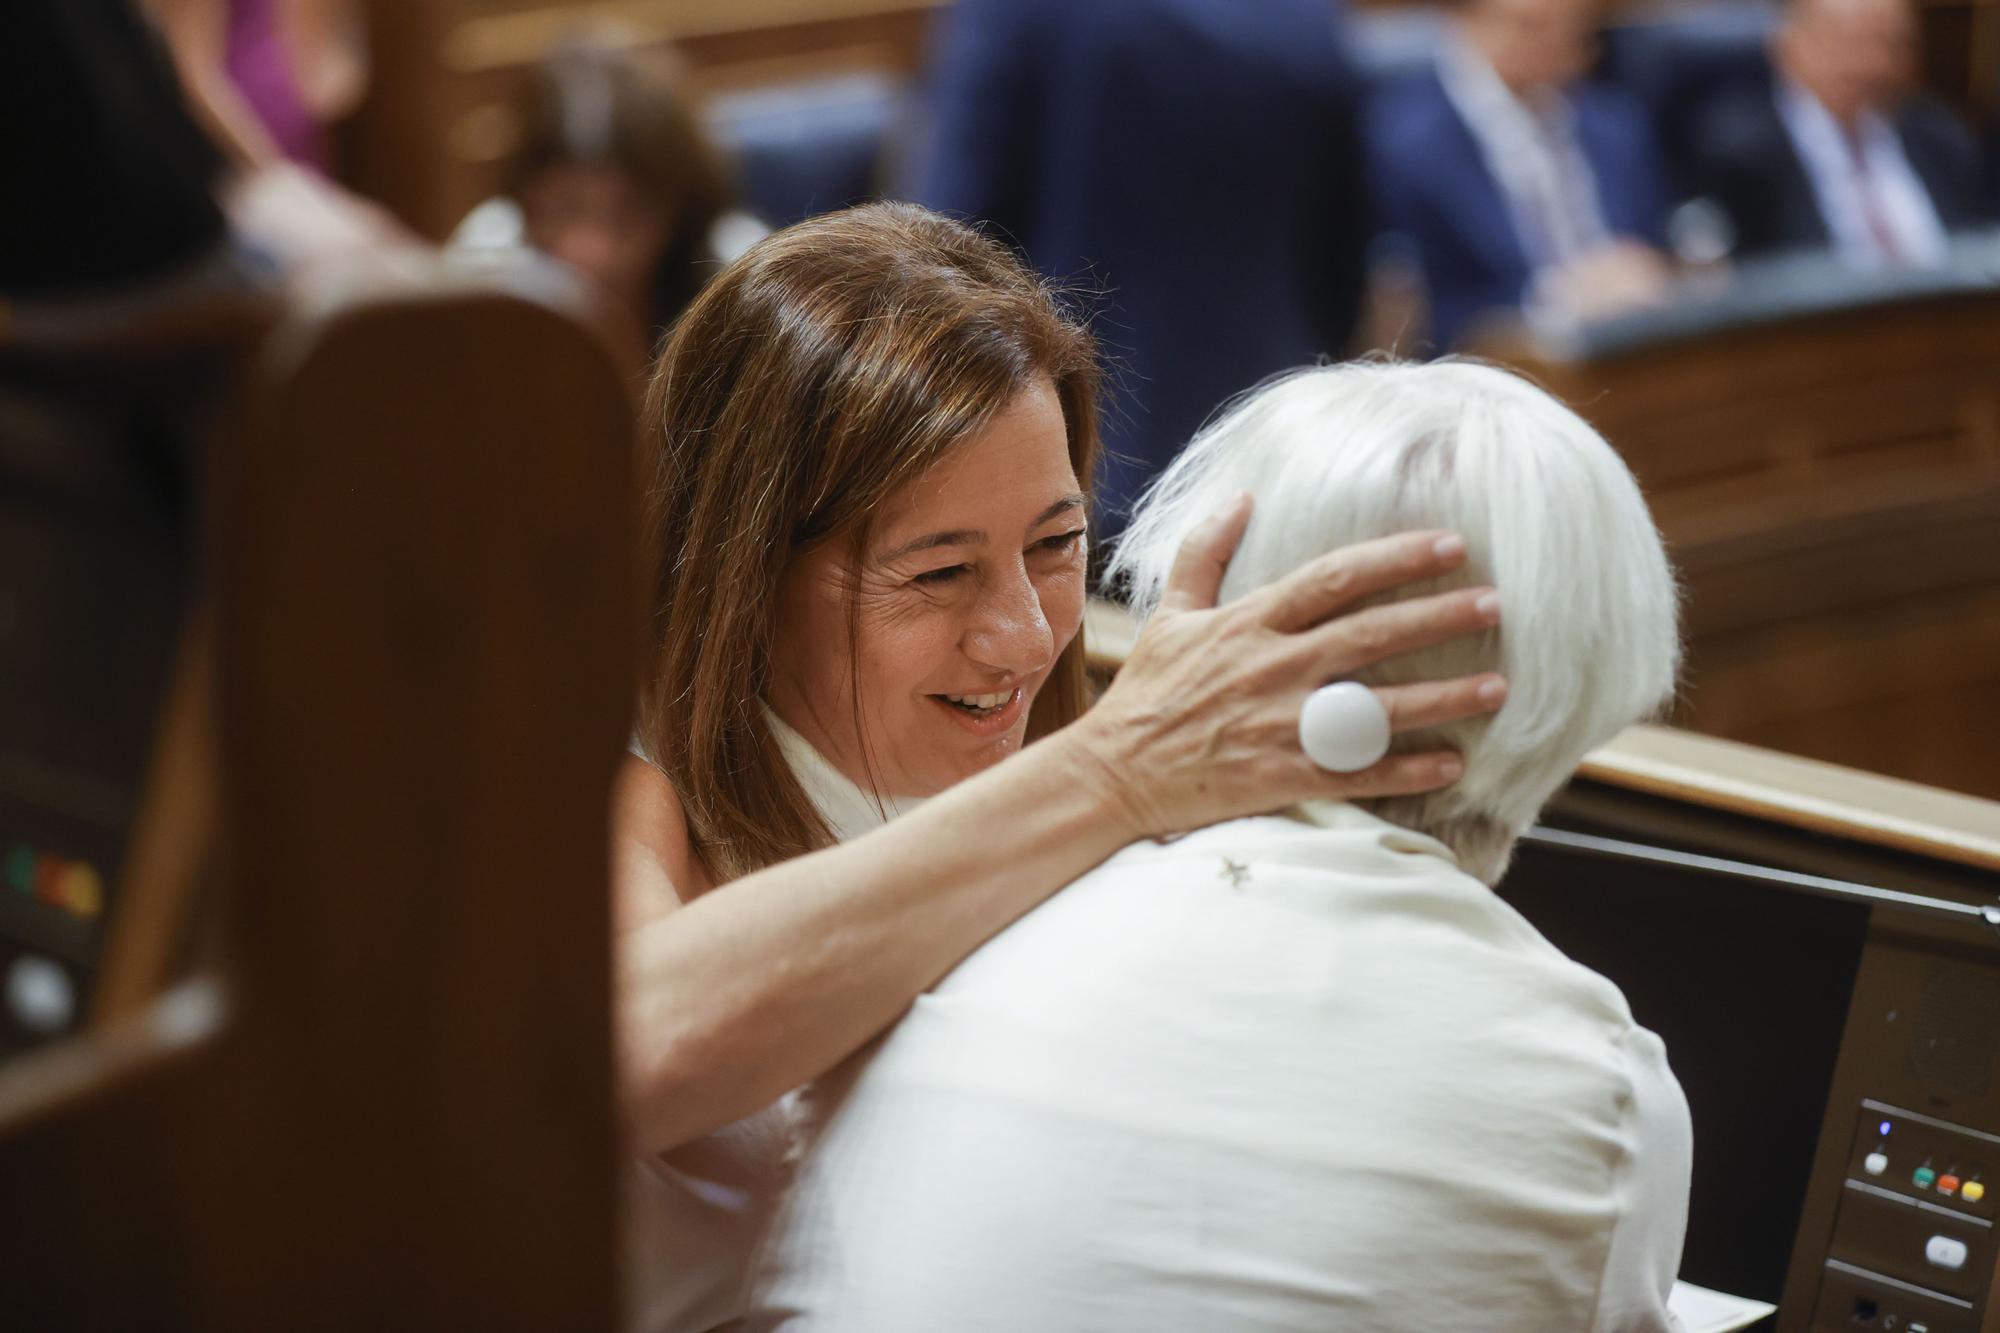 FOTOS | Francina Armengol elegida presidenta del Congreso